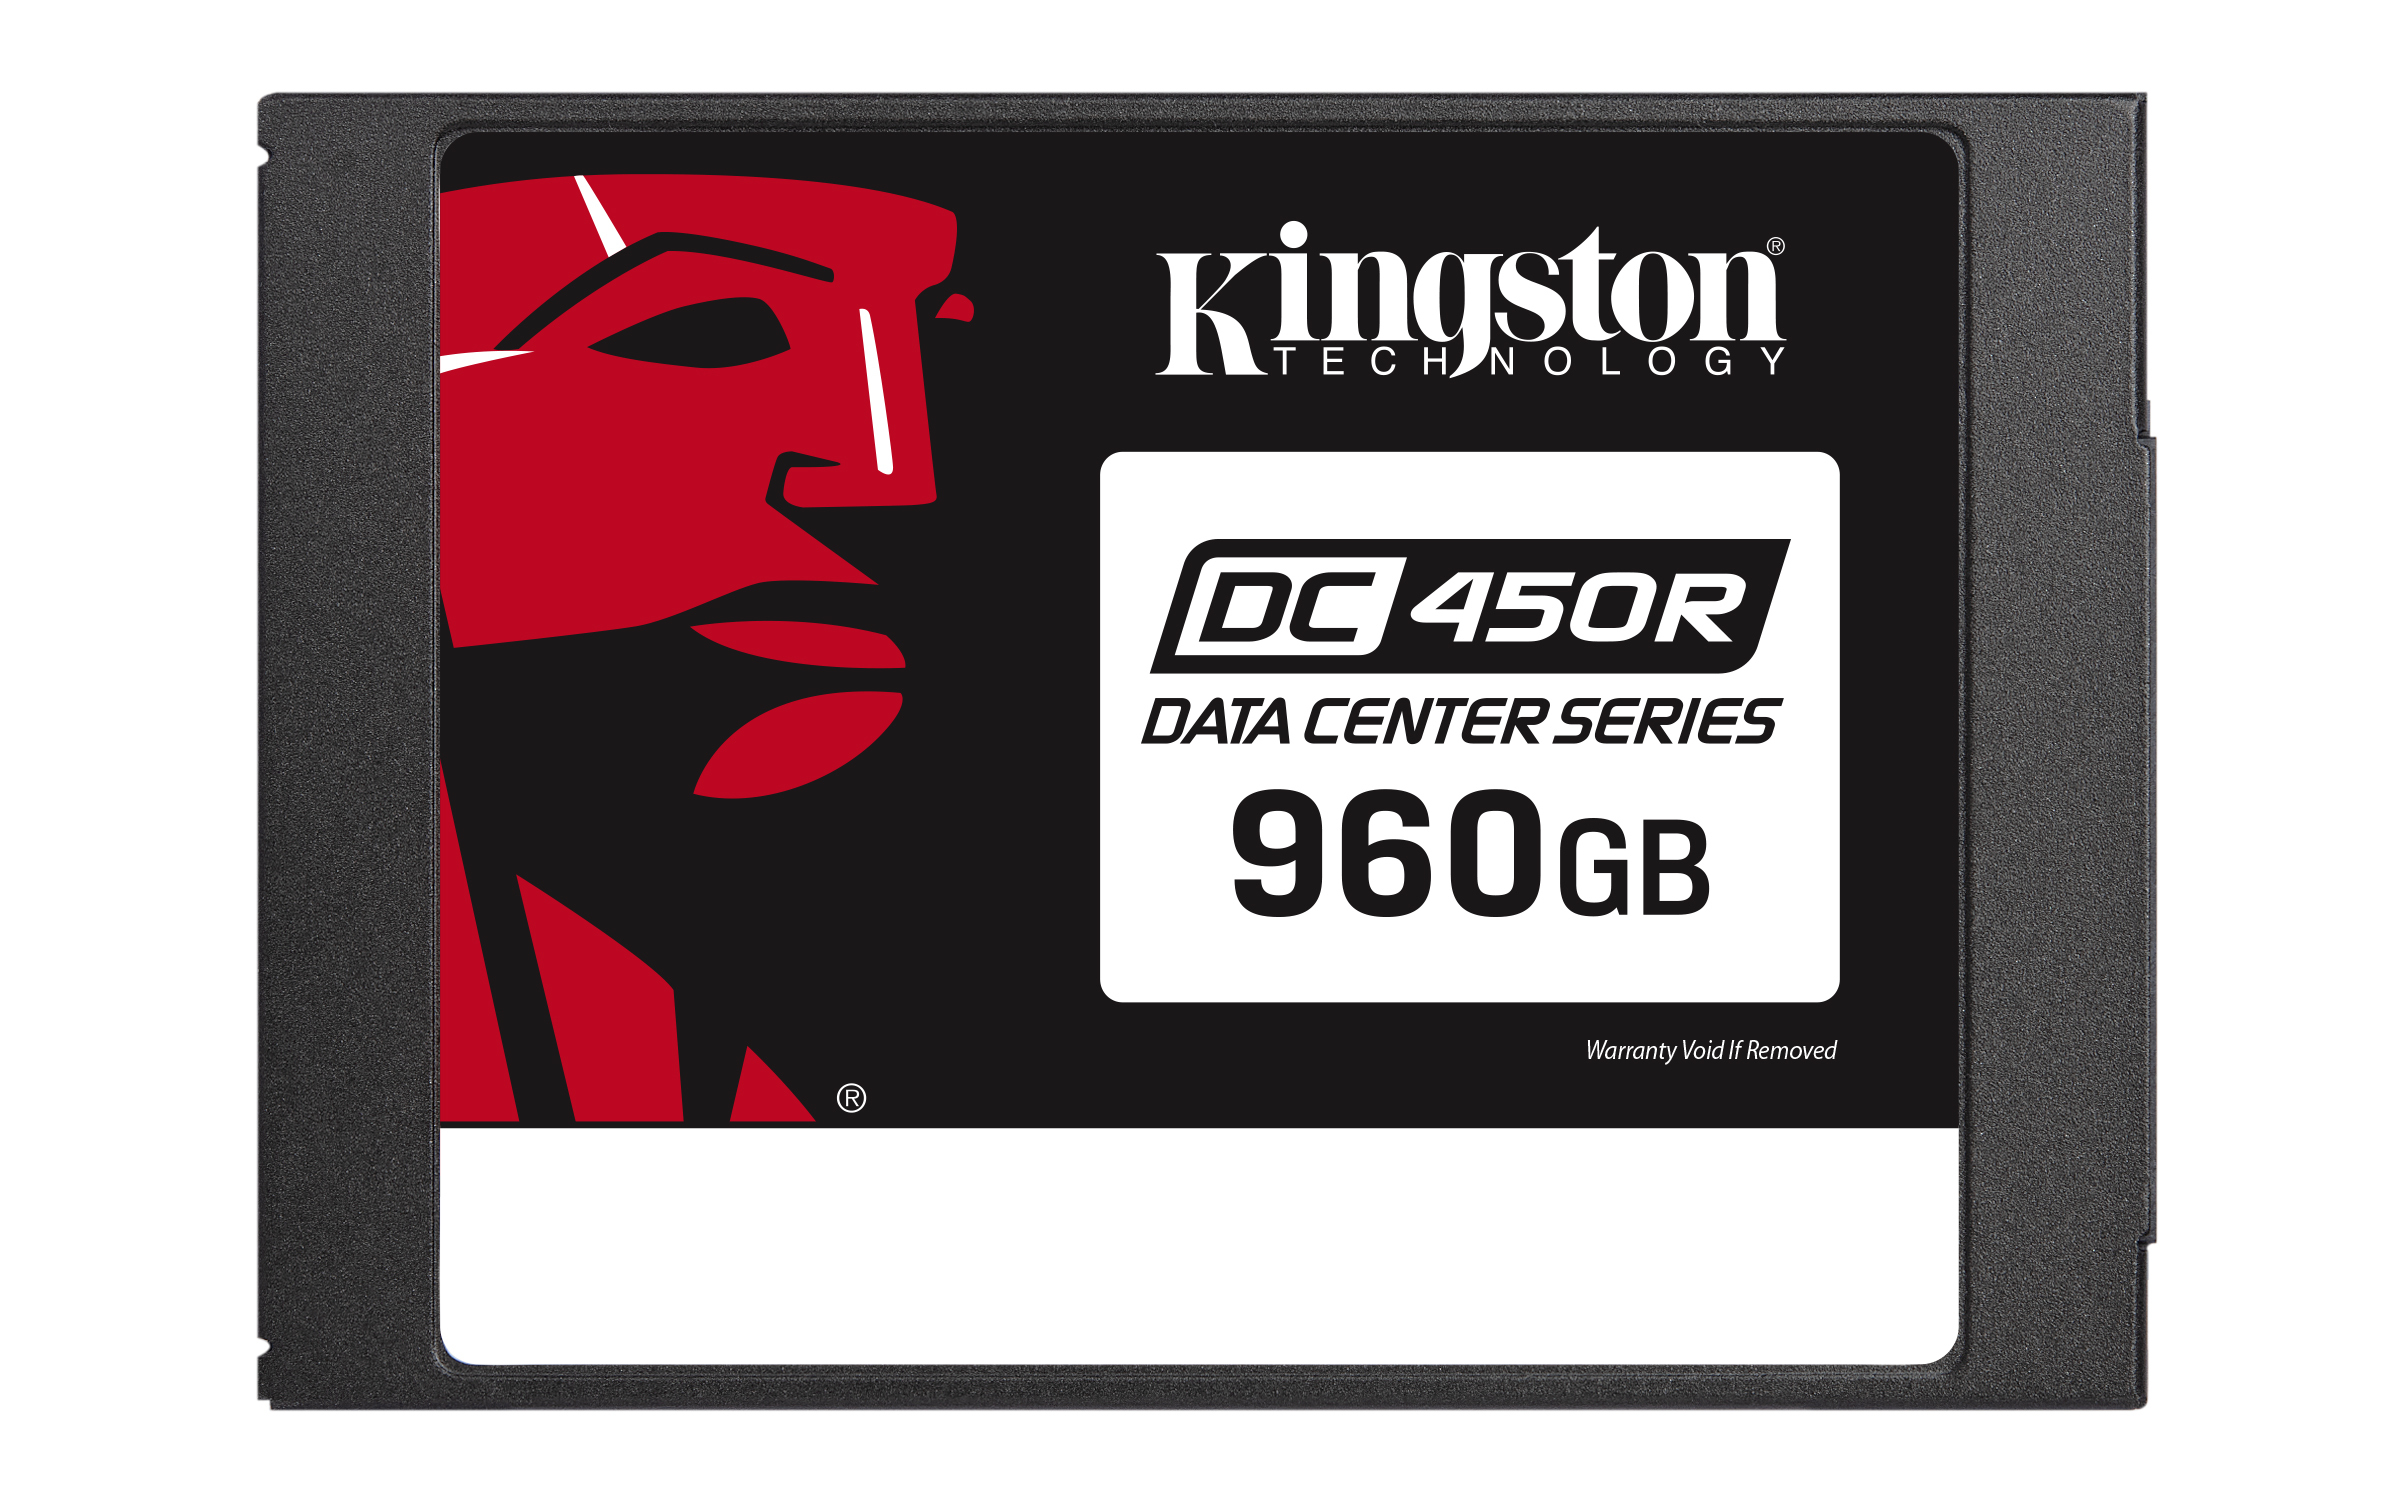 Ssd Kingston Technology Dc450R 960 Gb Sata Iii 560Mb/S 530Mb/S 6Gbit/S